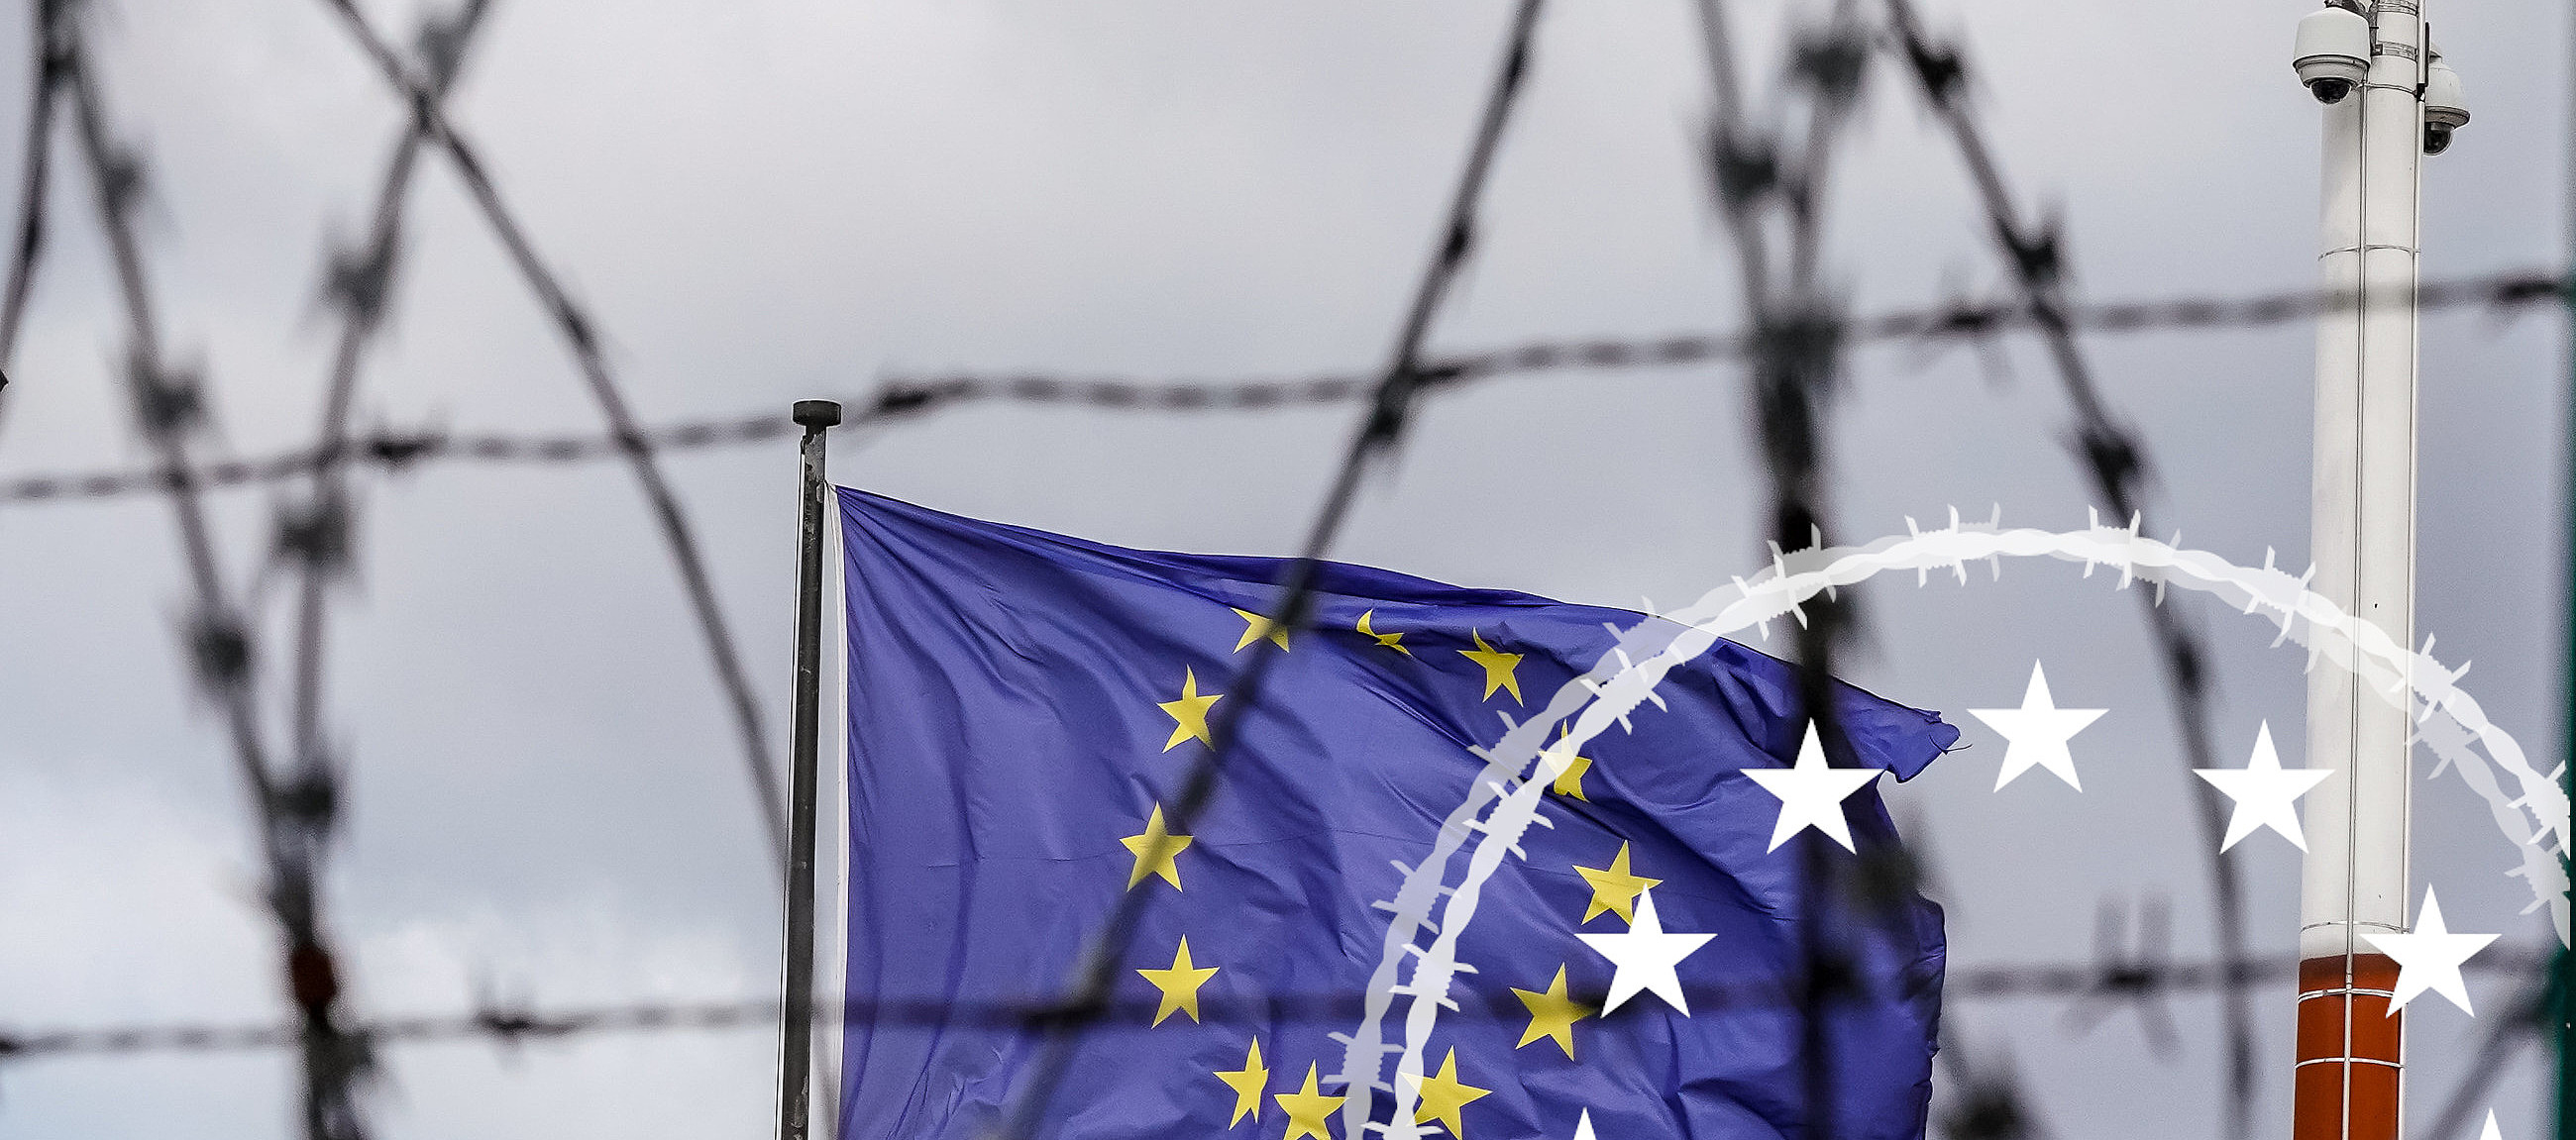 Europaflagge hinter Stacheldraht